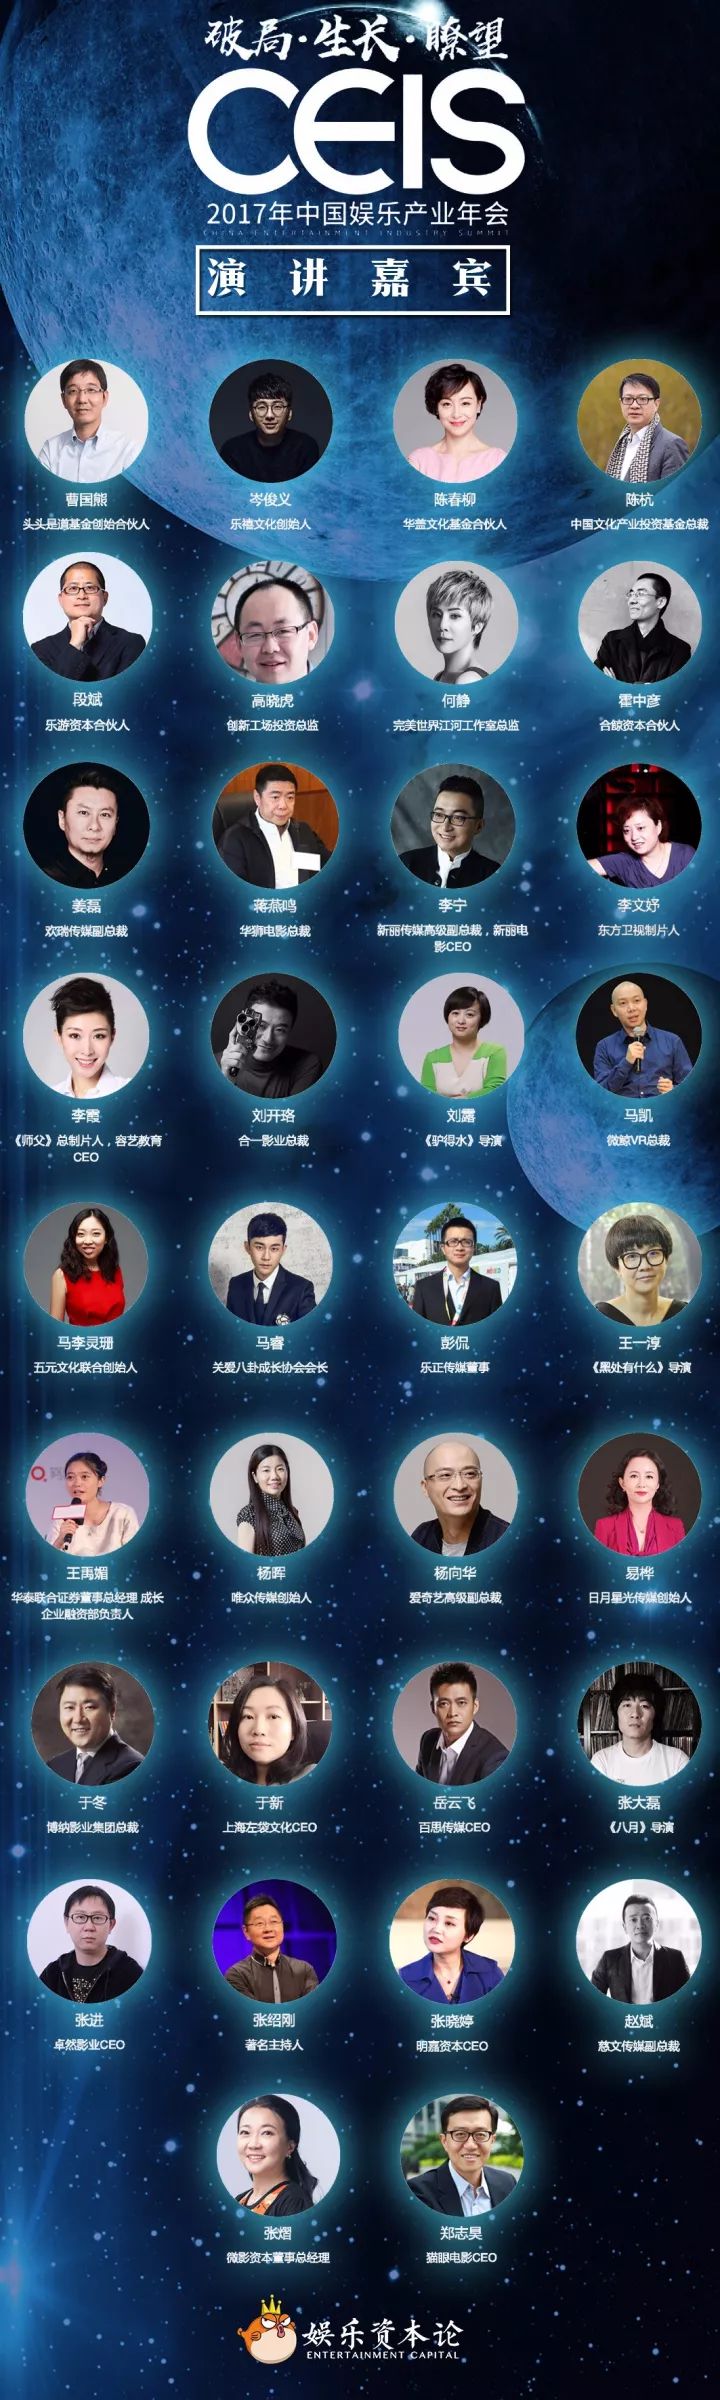 CEIS 2018 中国娱乐产业年会